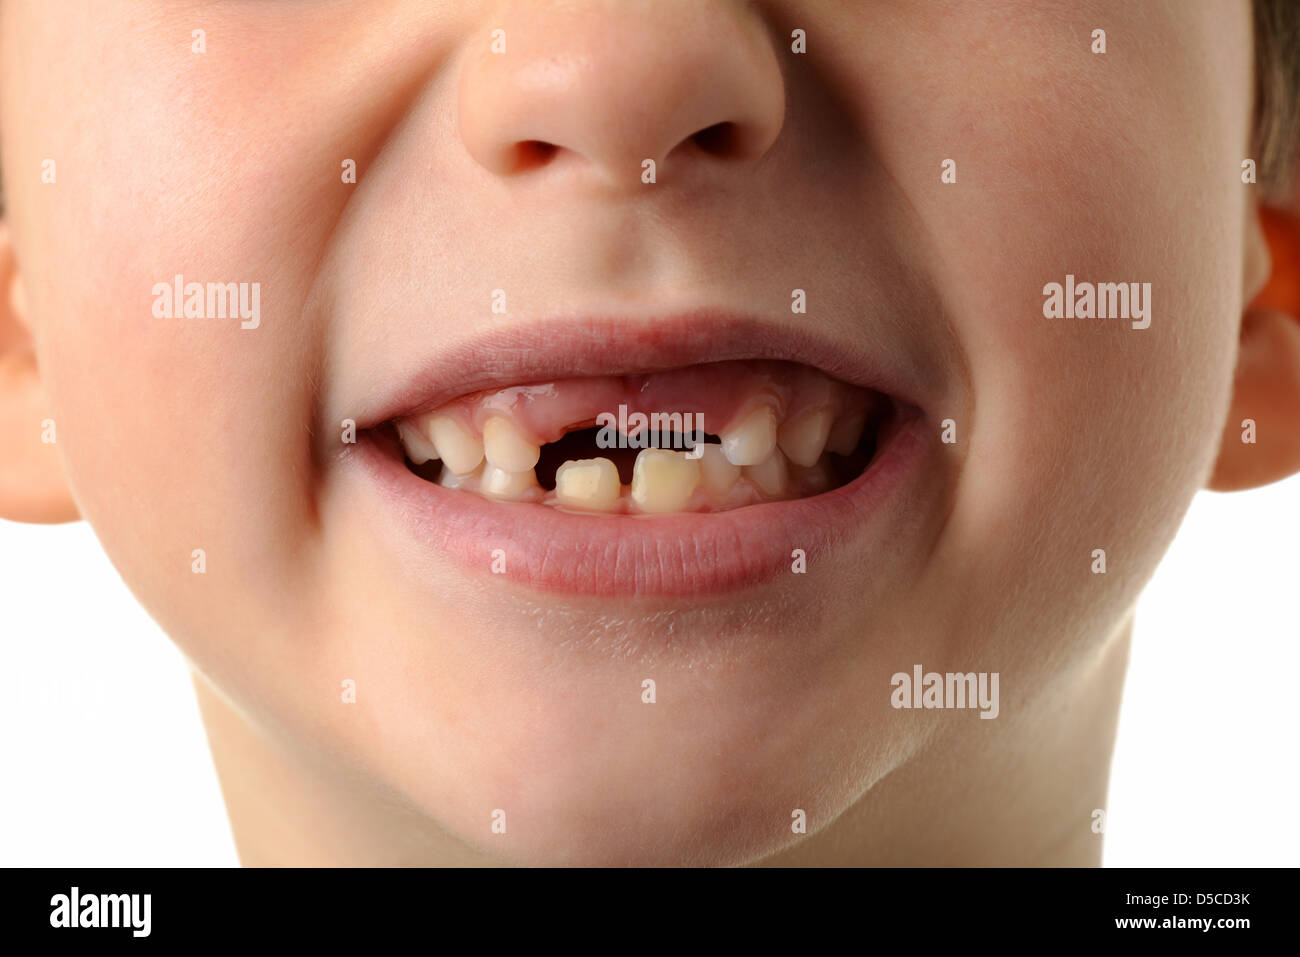 Bambino manca il suo due denti superiori, close-up di bocca del ragazzo che mostra i suoi due top denti mancanti. Foto Stock